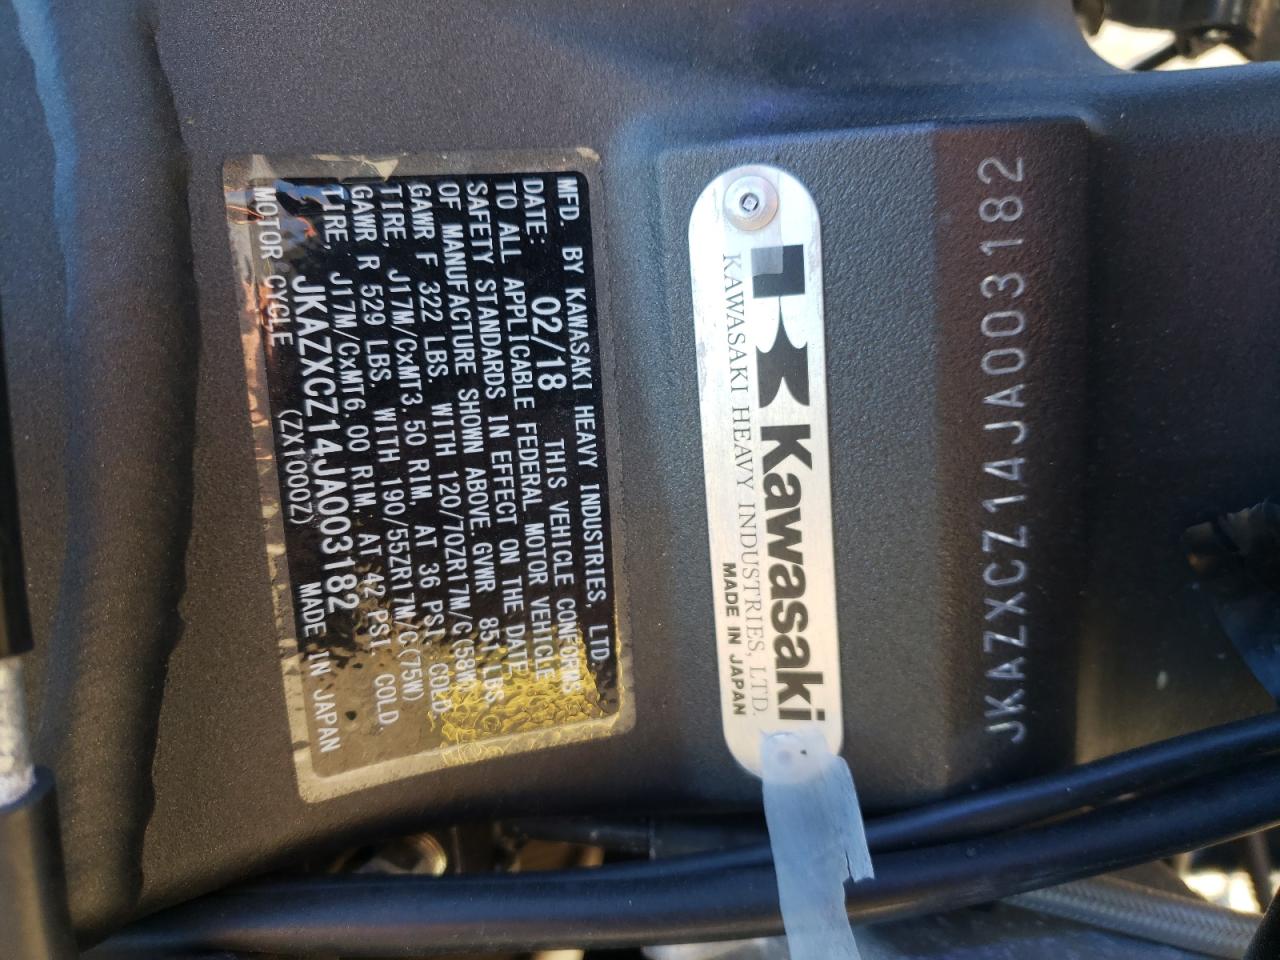 2018 Kawasaki ZX1000 Z for sale at Copart Marlboro, NY. Lot #64091 